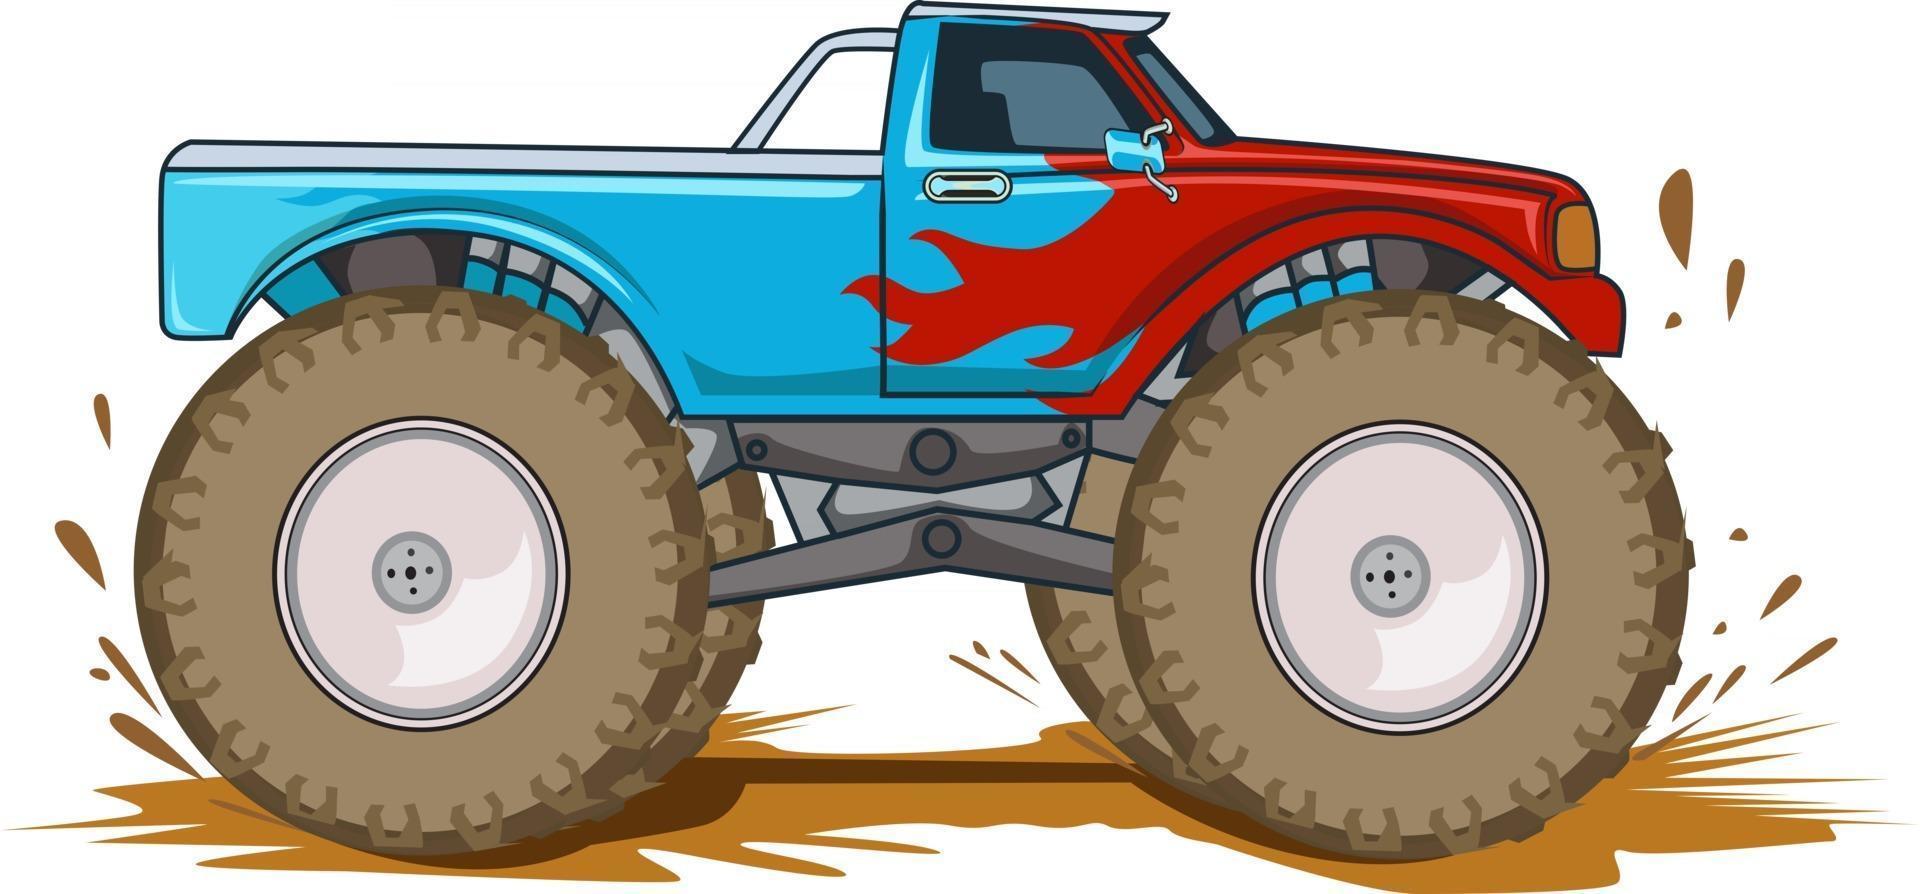 Adventure off road monster truck illustration vector